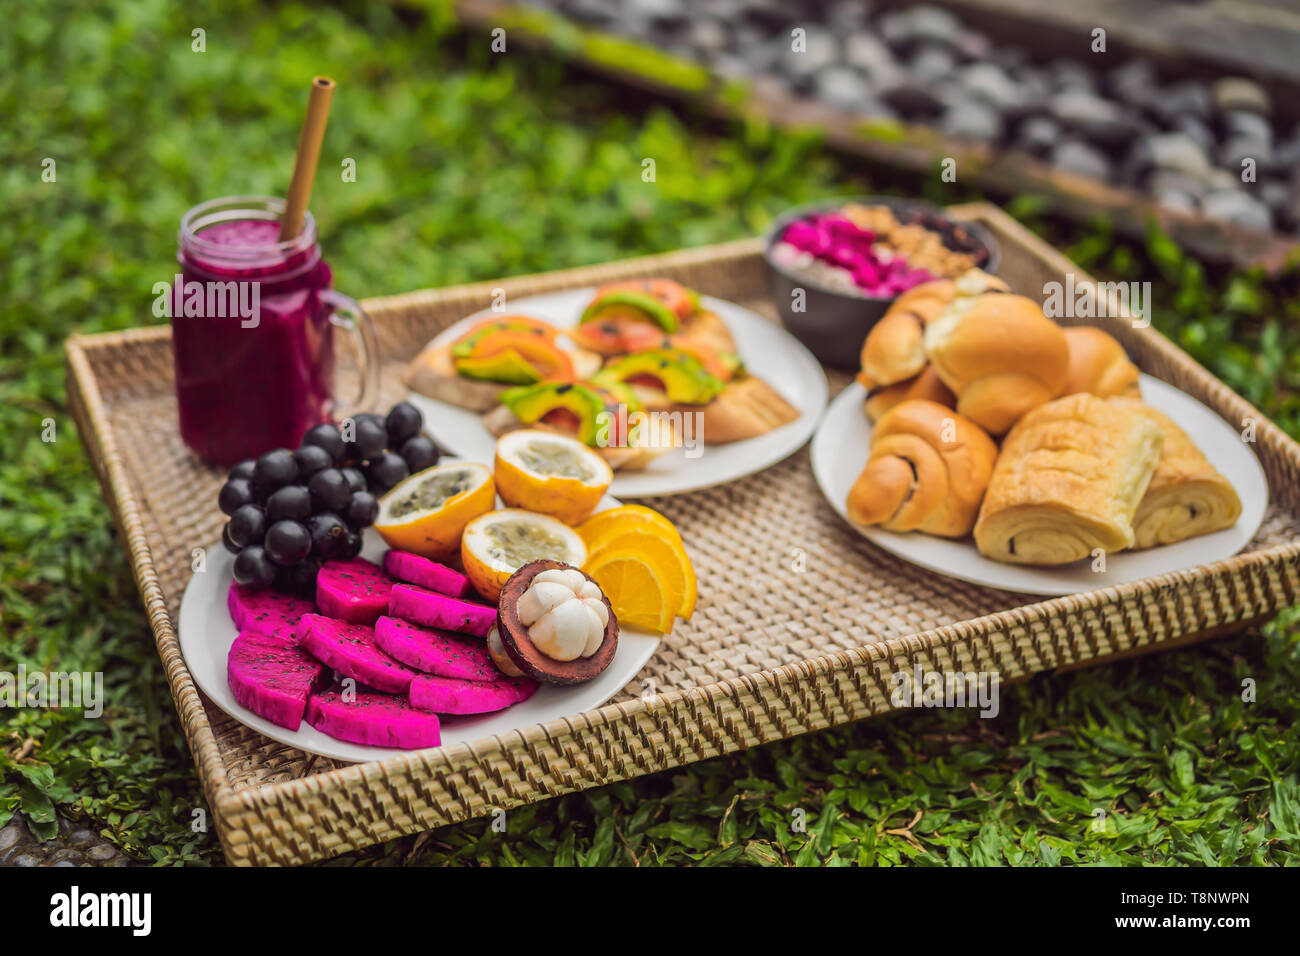 Frühstück auf einem Tablett mit Obst, Brötchen, Avocado Sandwiches, smoothie Schüssel stehen auf dem Gras Stockfoto